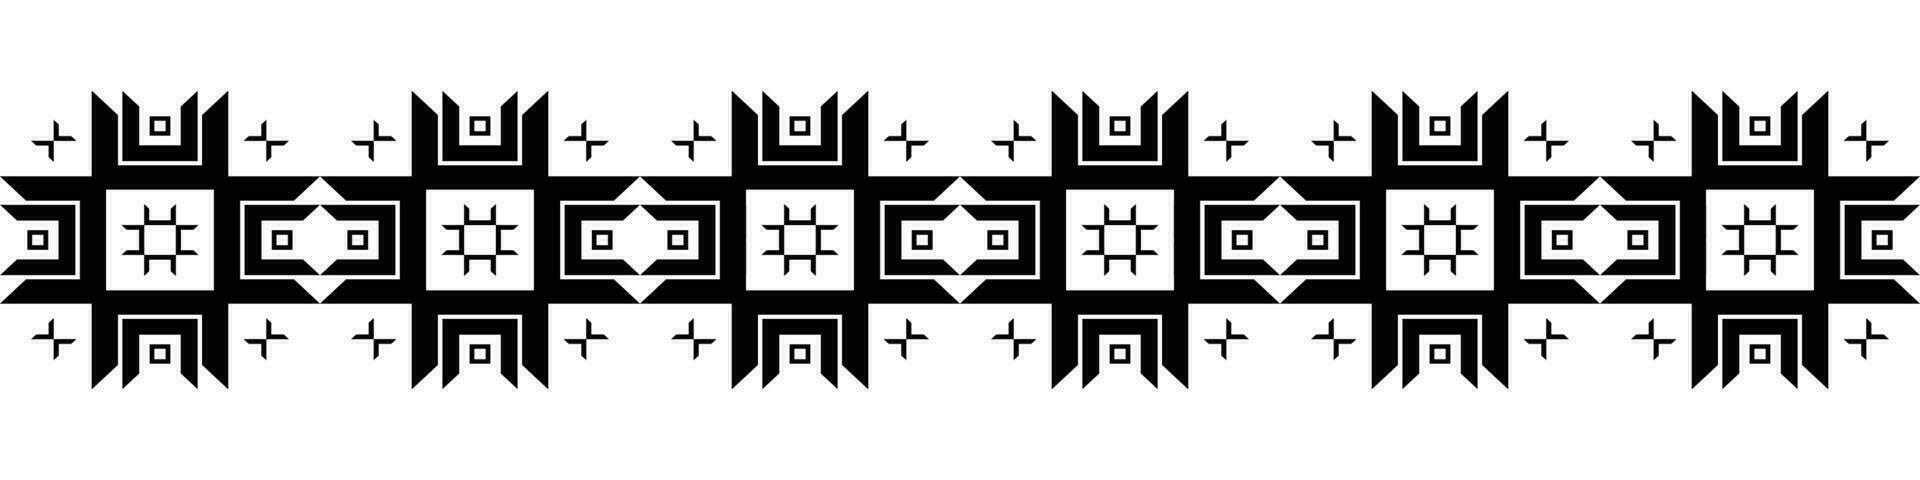 zwart grens. aztec tribal naadloos patroon in zwart en wit. abstract etnisch meetkundig kunst afdrukken ontwerp voor textiel sjabloon, kleding stof, tapijt, ornament, behang, achtergrond, tapijt. vector